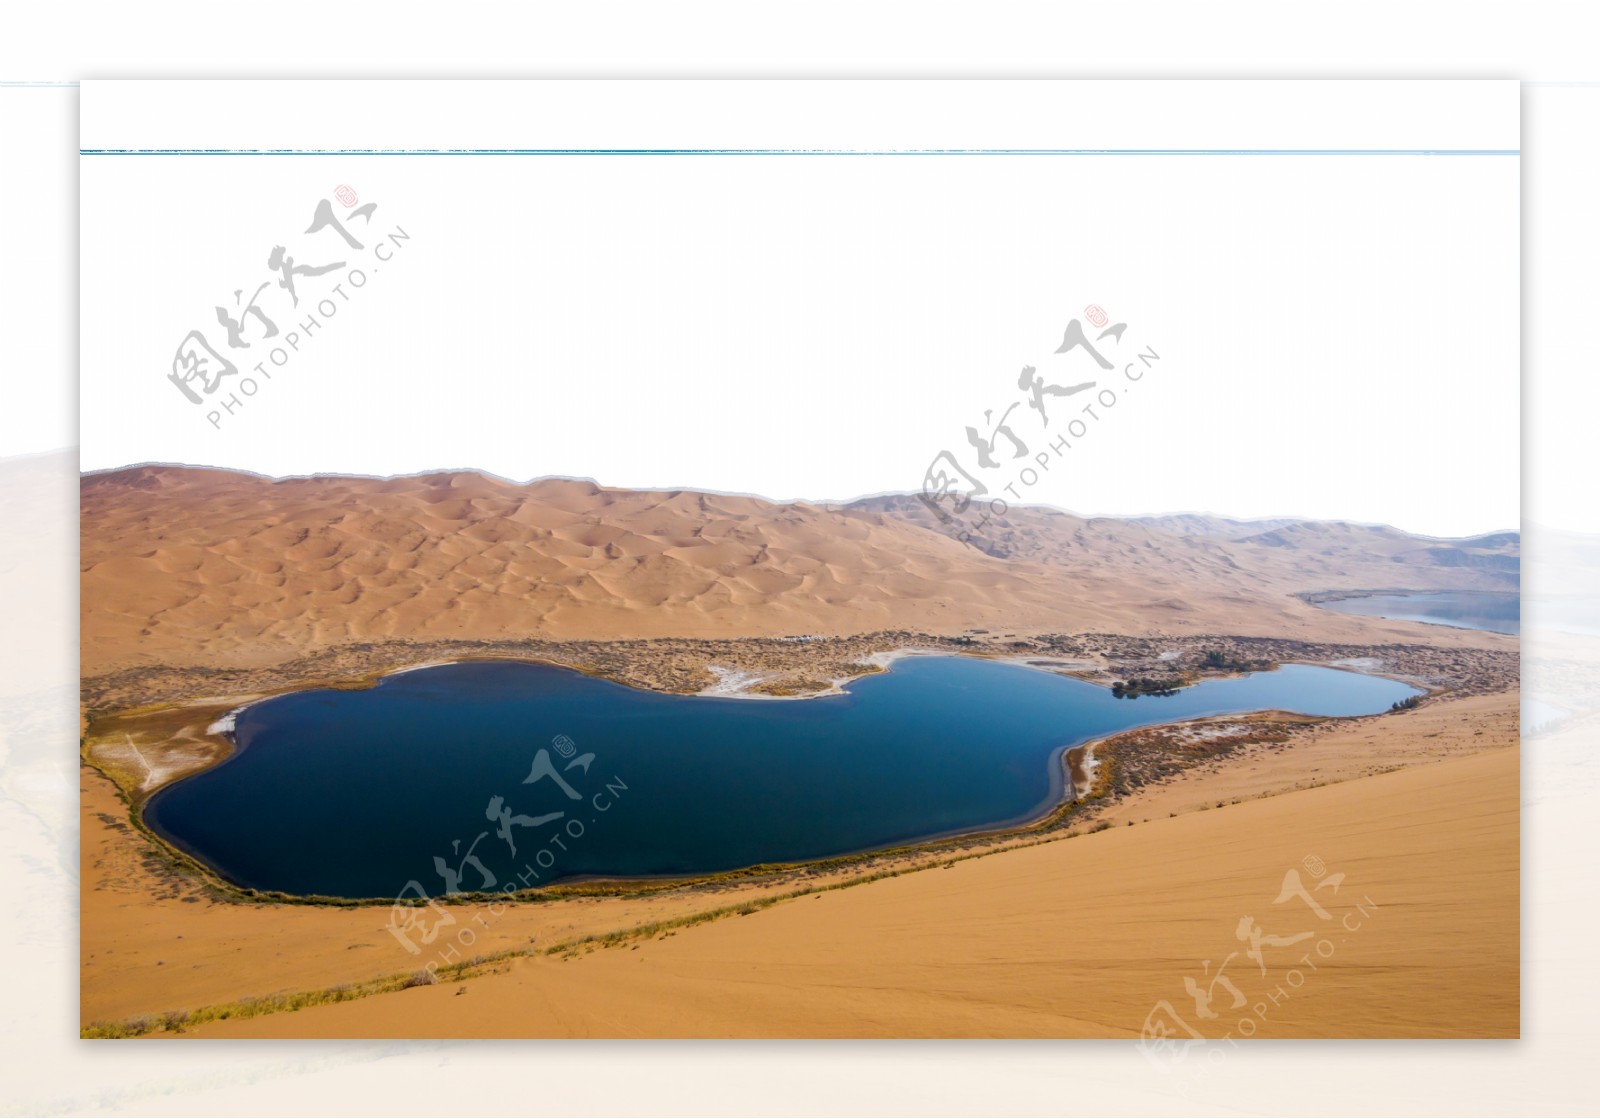 沙漠湖泊湖水干旱荒凉素材